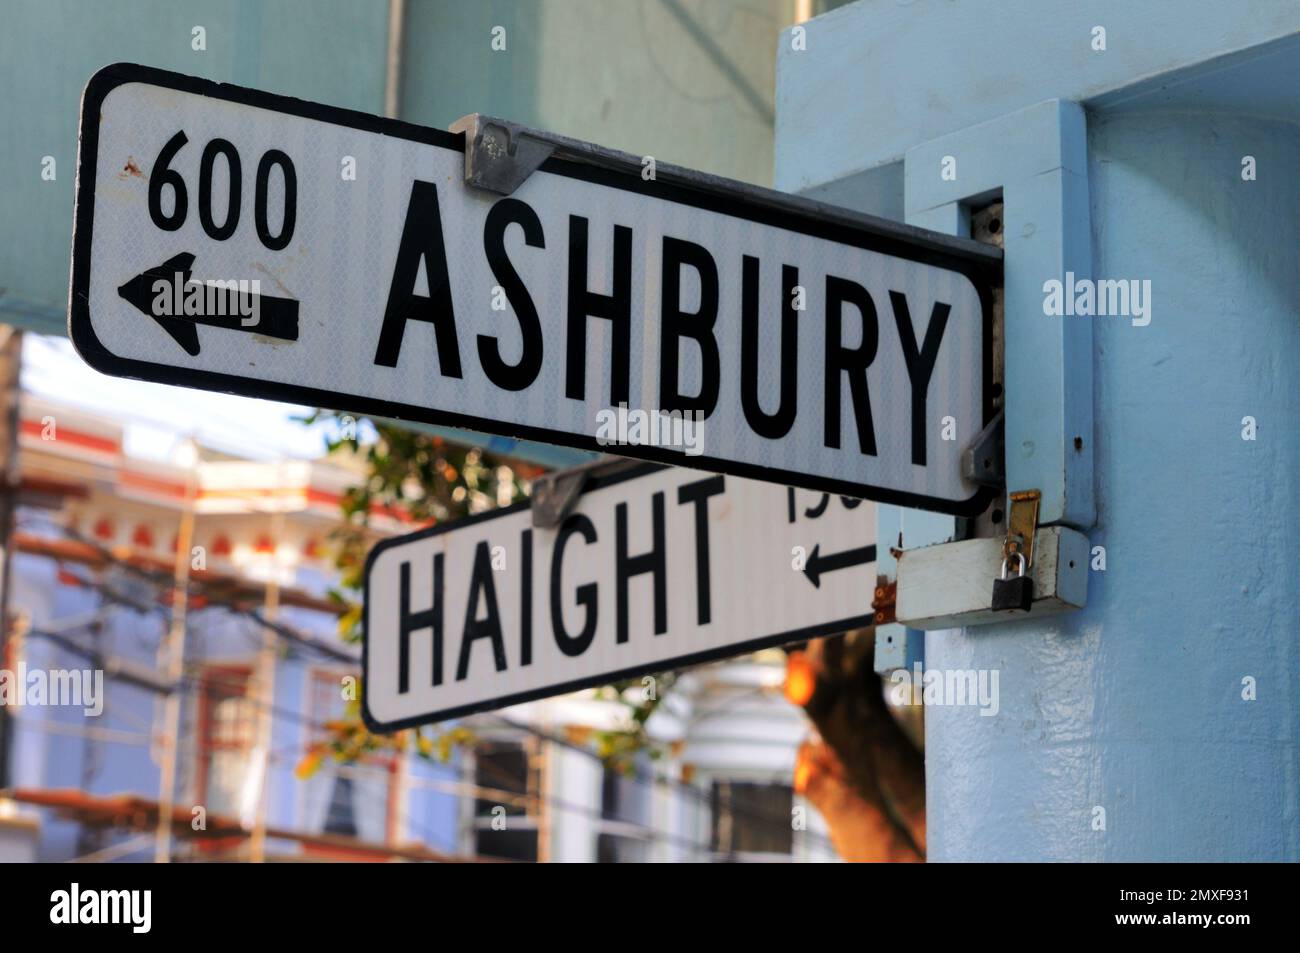 Haight-Ashbury capture l'essence vibrante de la culture hippie avec son architecture emblématique, son Street art coloré et son style de vie libre. Banque D'Images